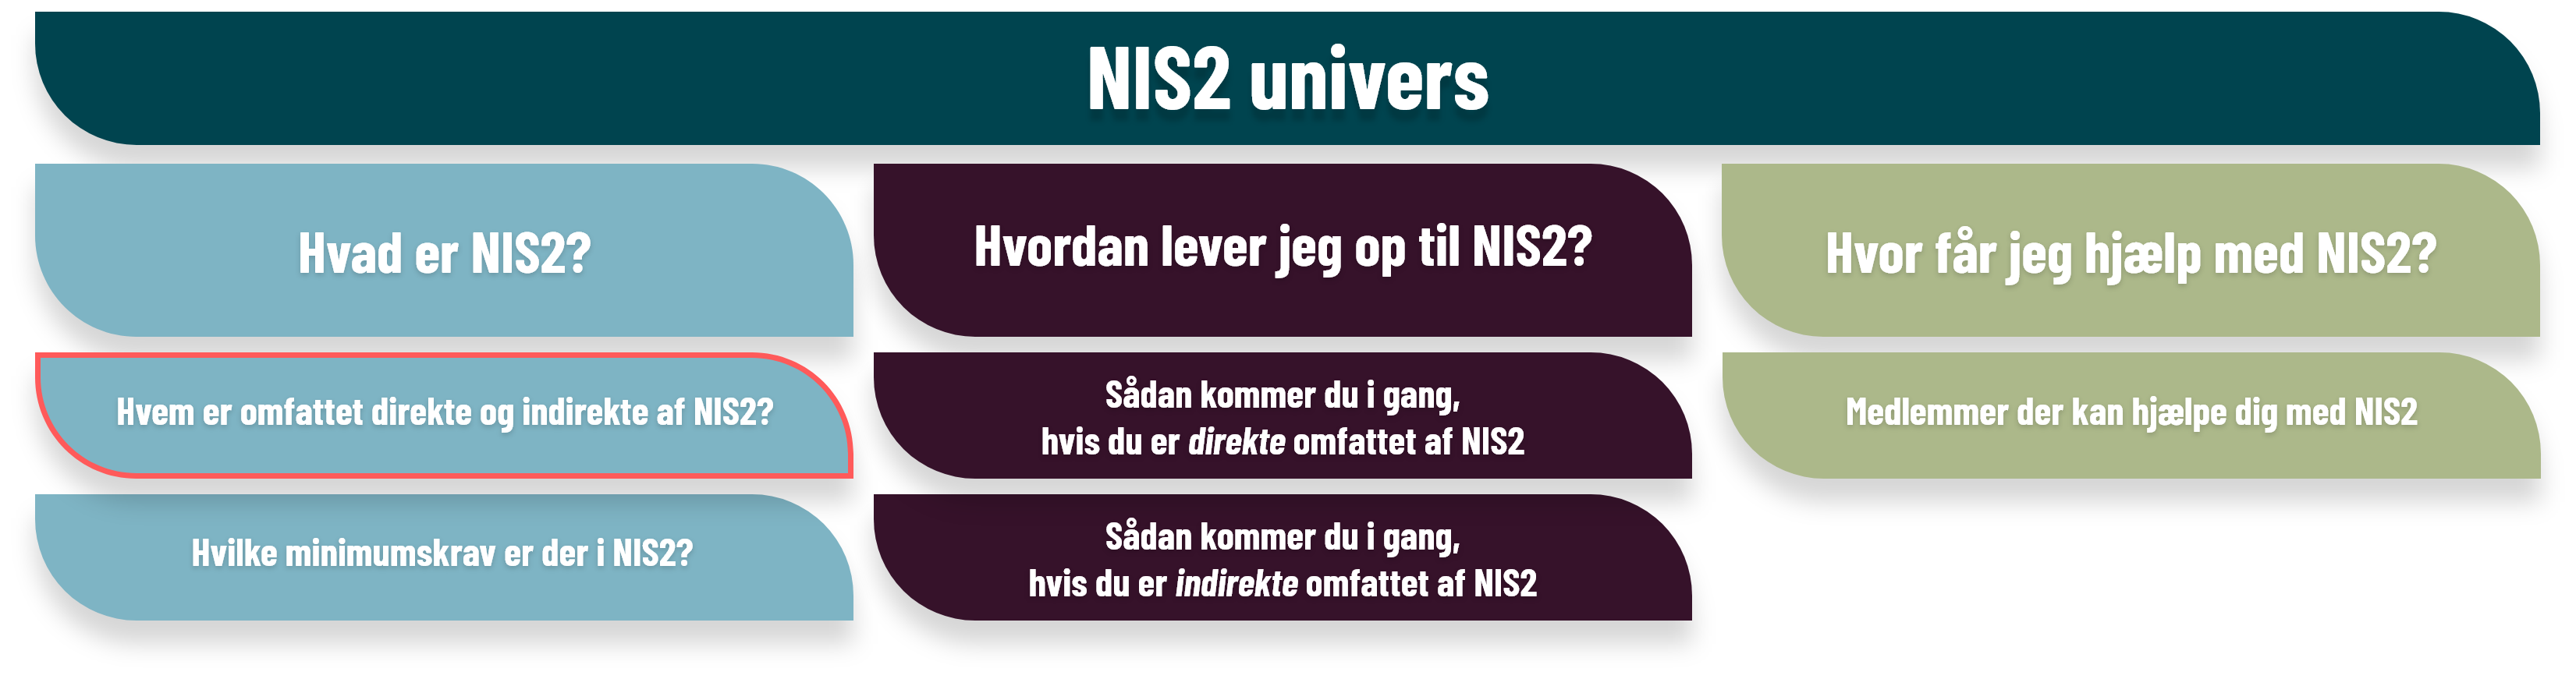 Hvem er omfattet direkte og indirekte af NIS2?